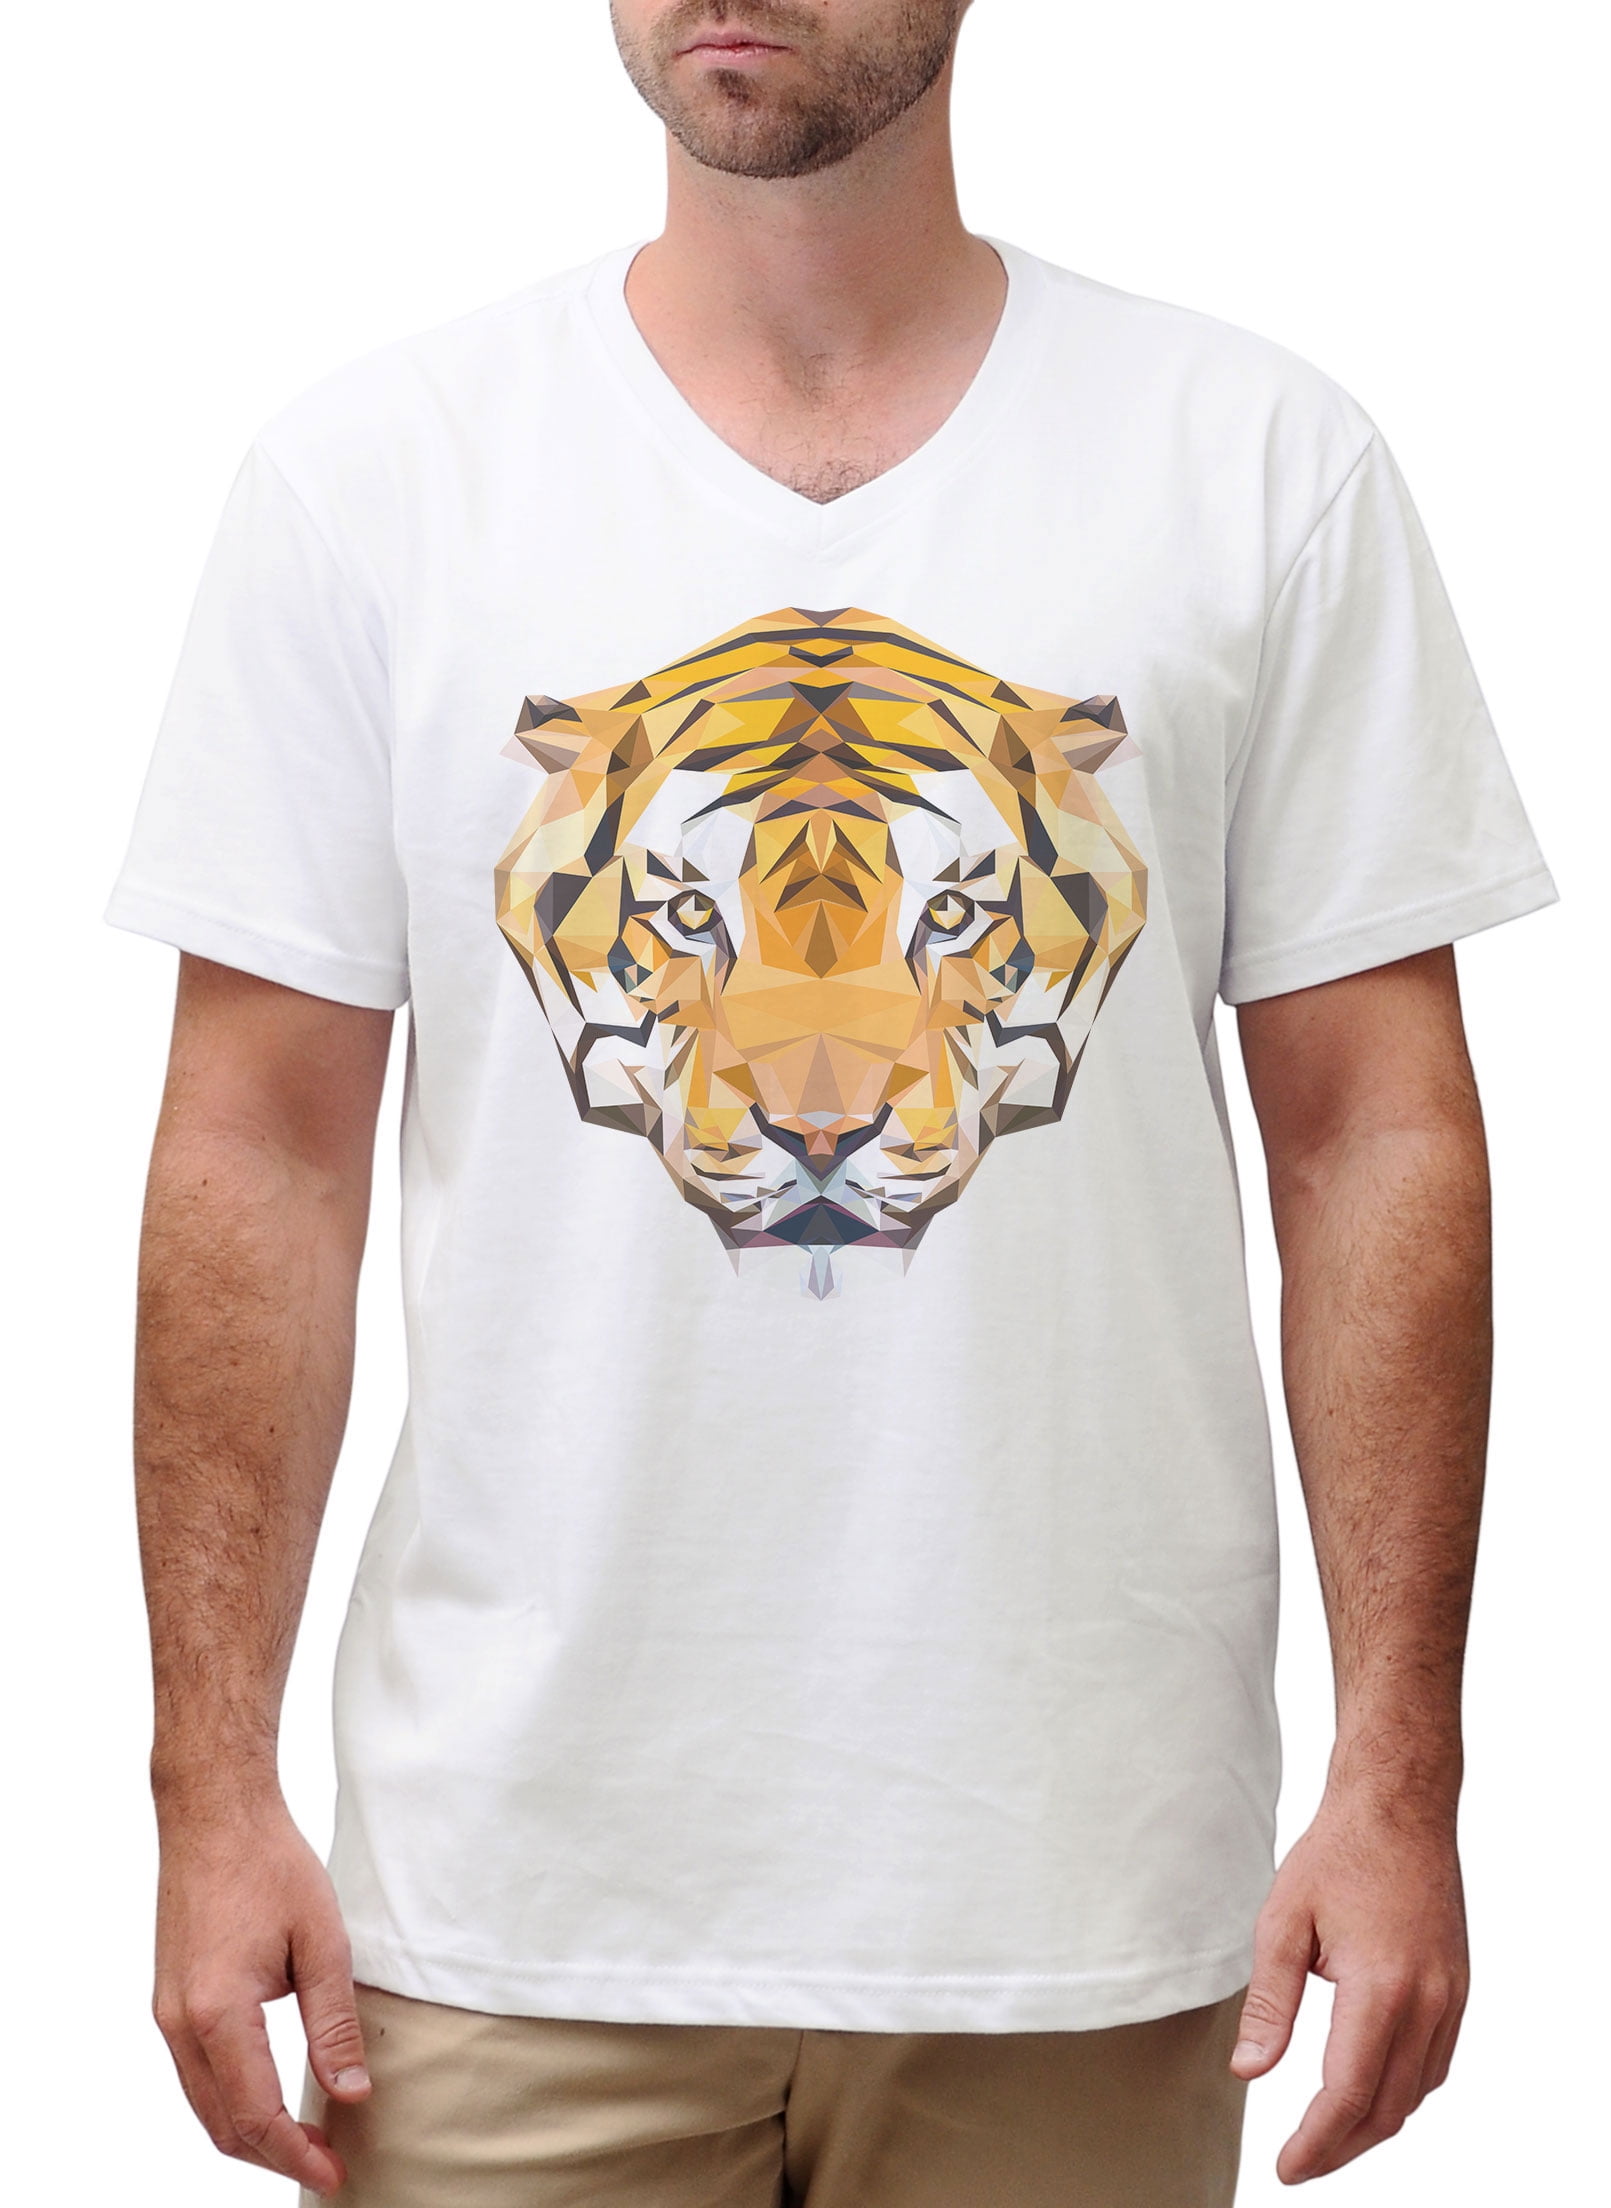 Vietsbay - Tiger Head Printed Cotton Short Sleeves V-neck Men T-shirt ...